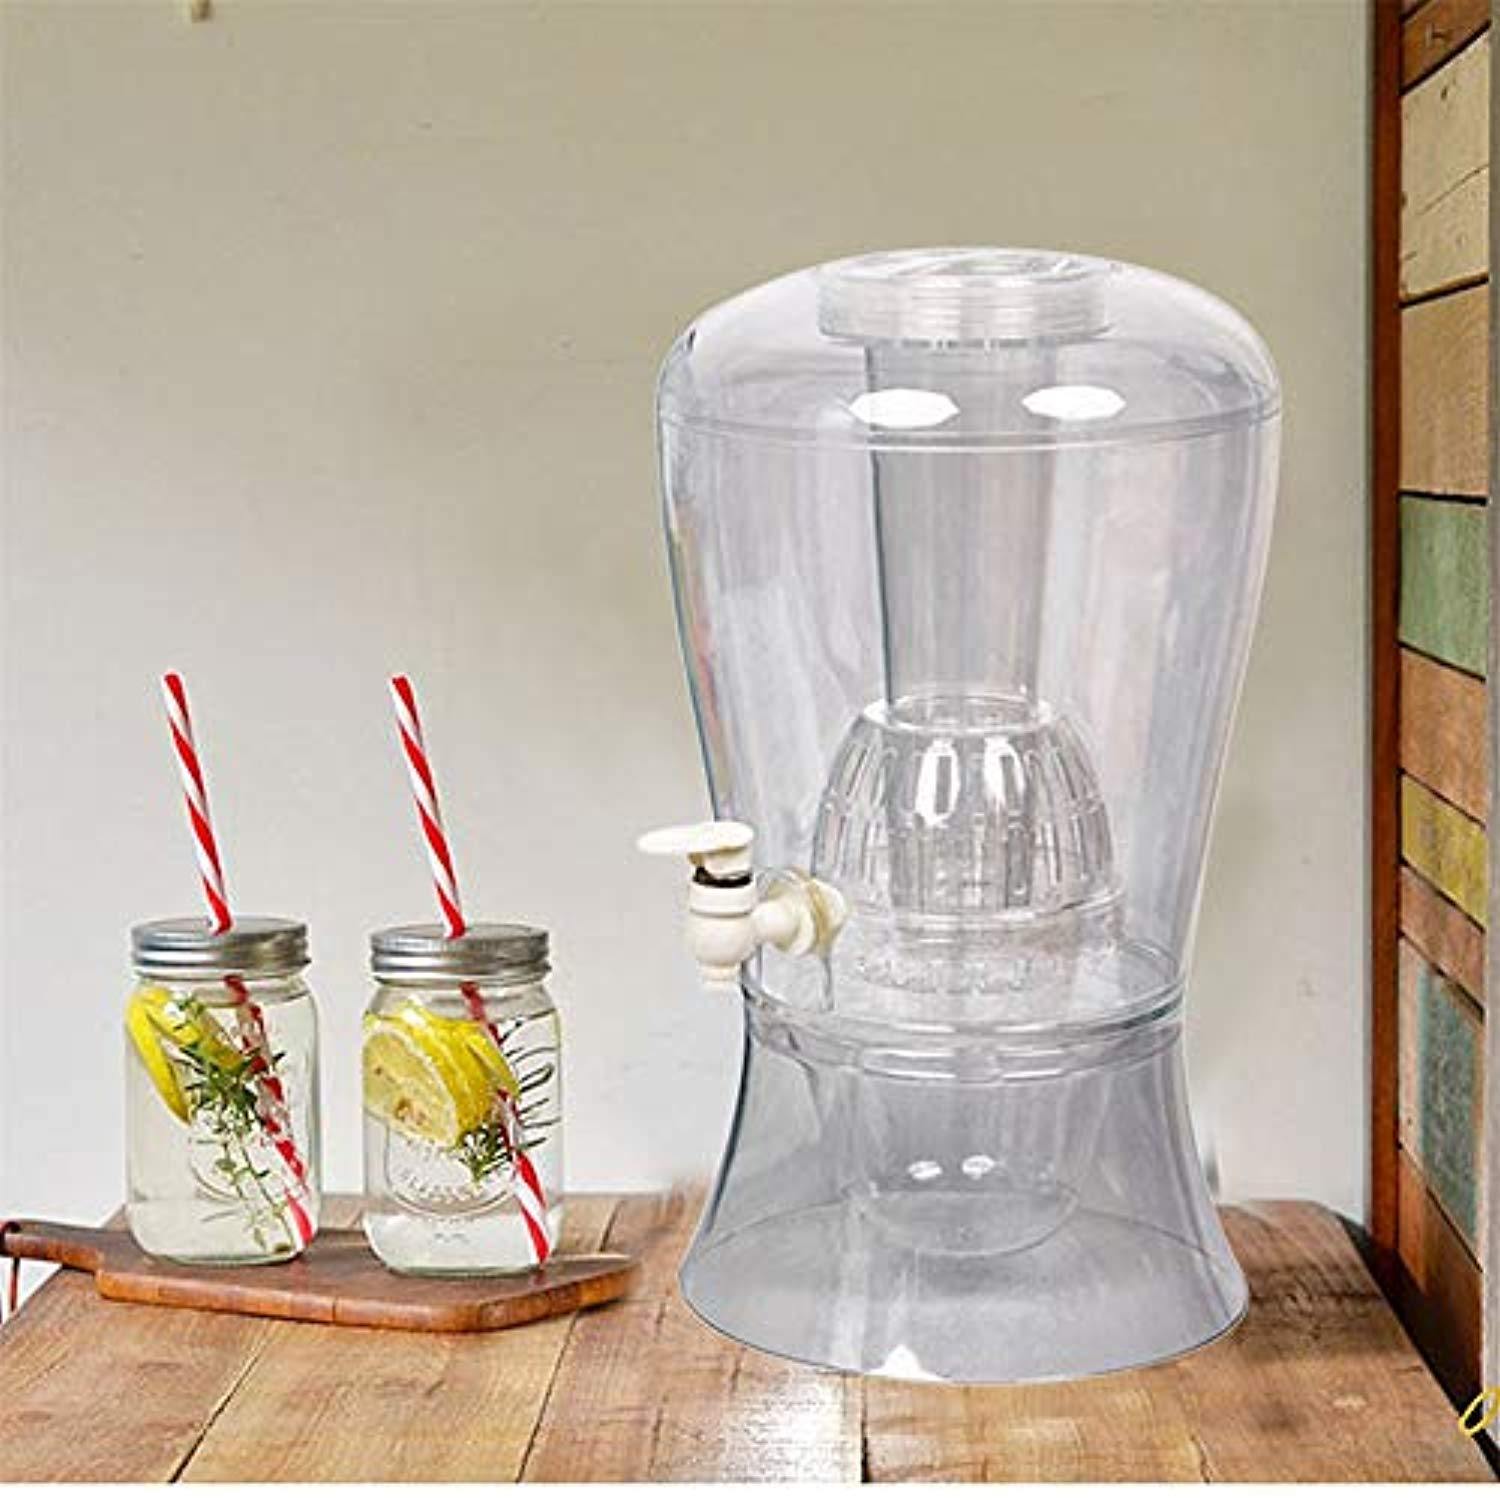 Bosonshop 2 Gallon beverage dispenser on Stand with Cooling Cylinder, Dishwasher Safe